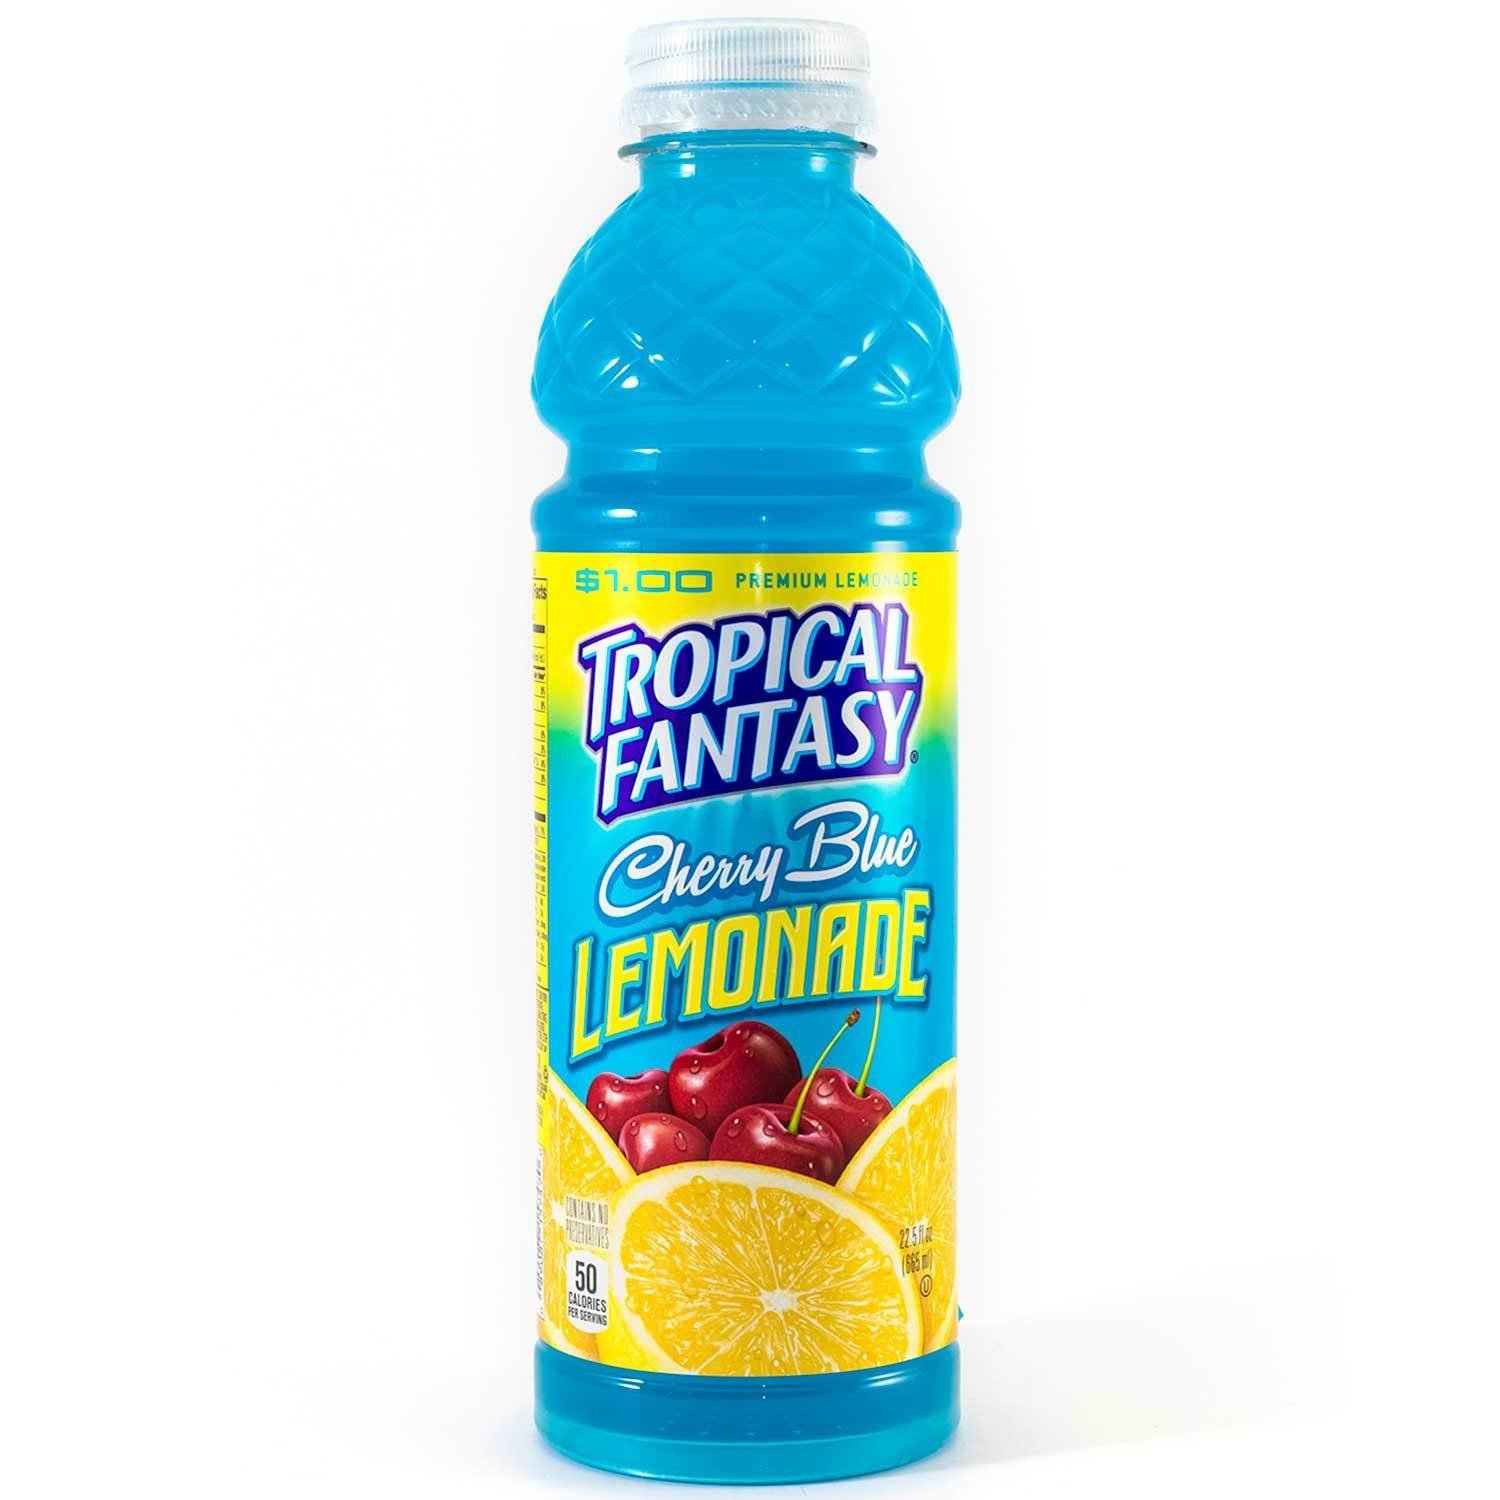 Tropical Fantasy Cherry Blue Lemonade 24/24 oz